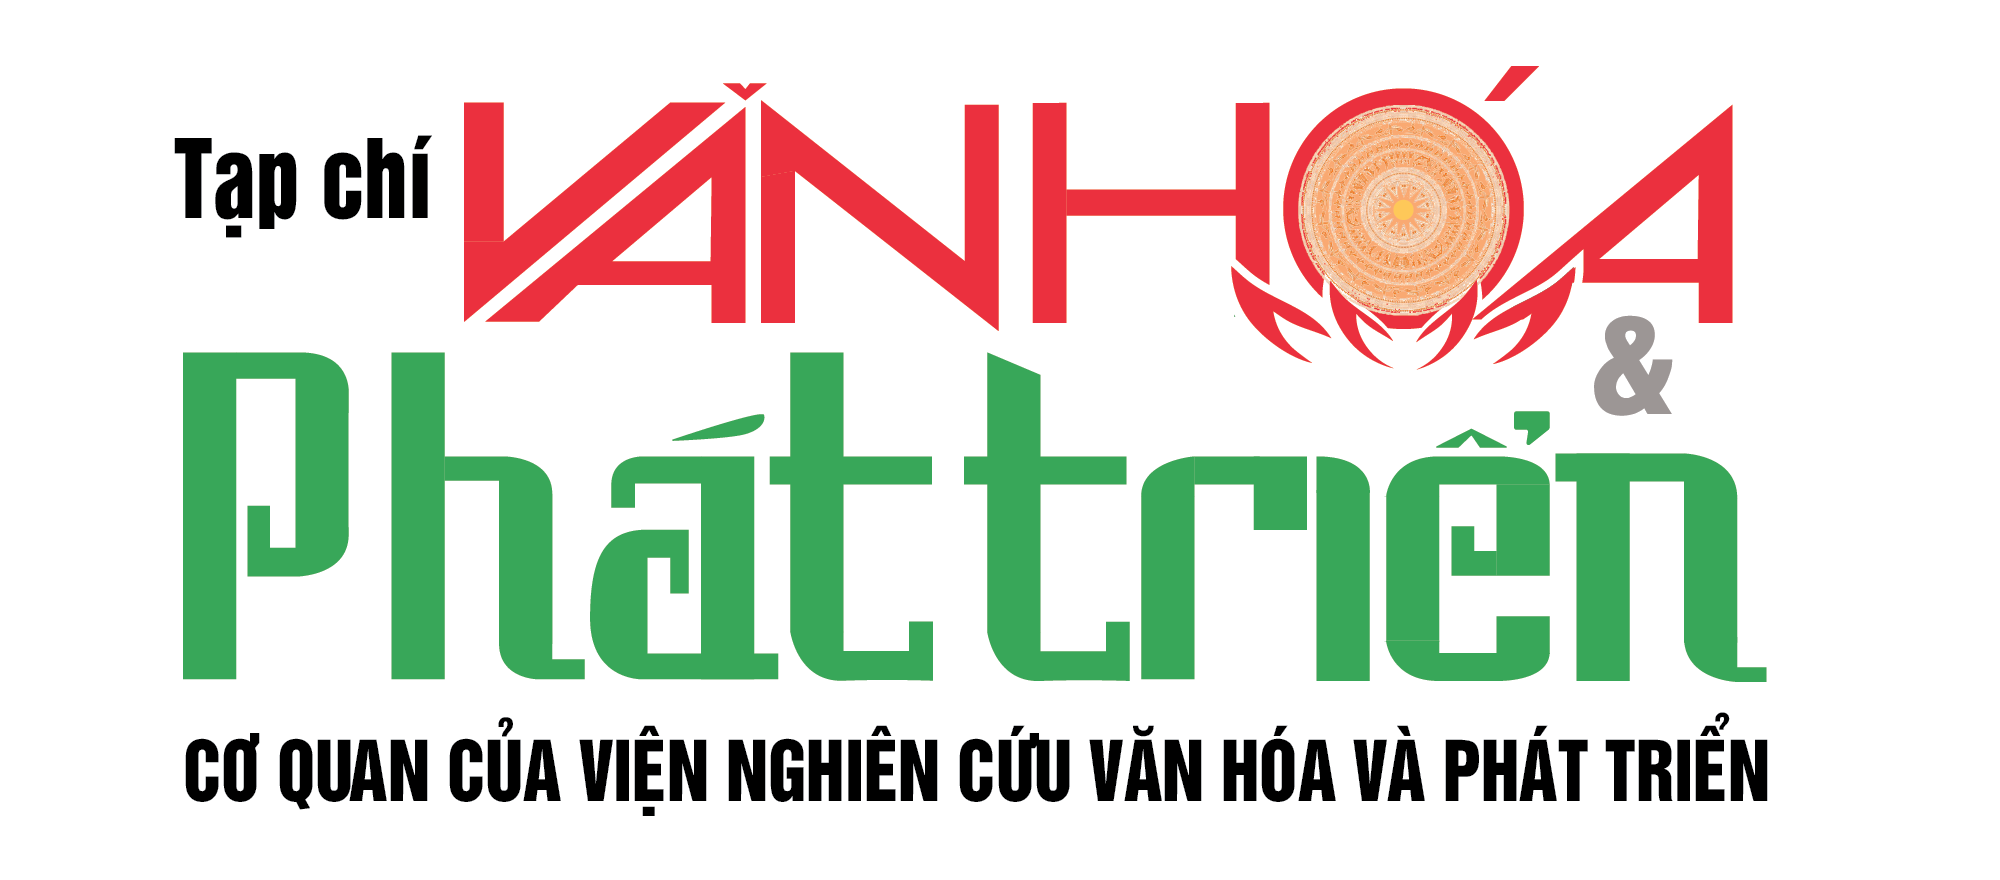 logo-van-hoa-phat-trien-1620826774-1683424473.png